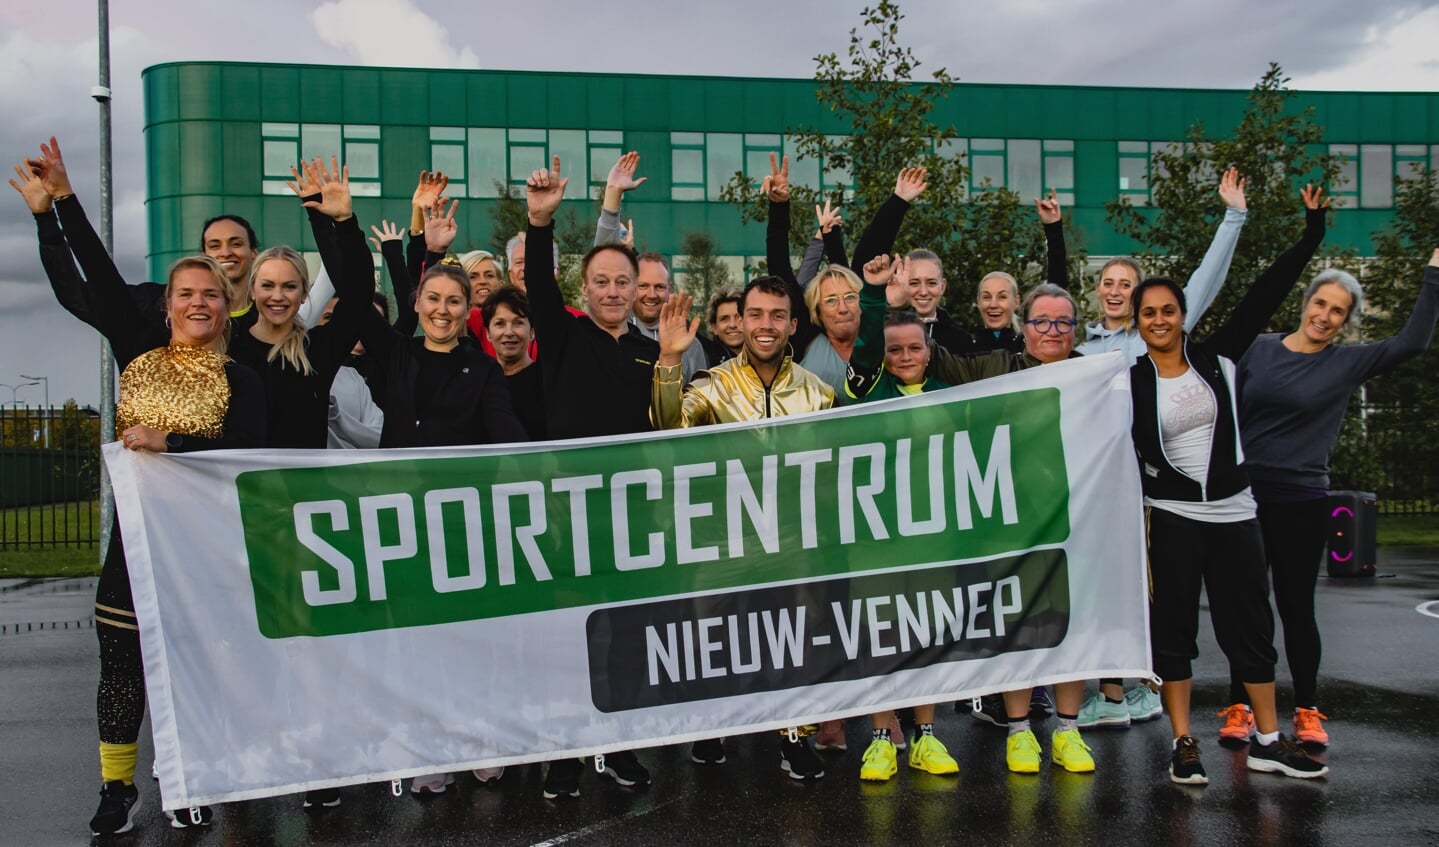 Grote blijdschap bij Sportcentrum Nieuw-Vennep.